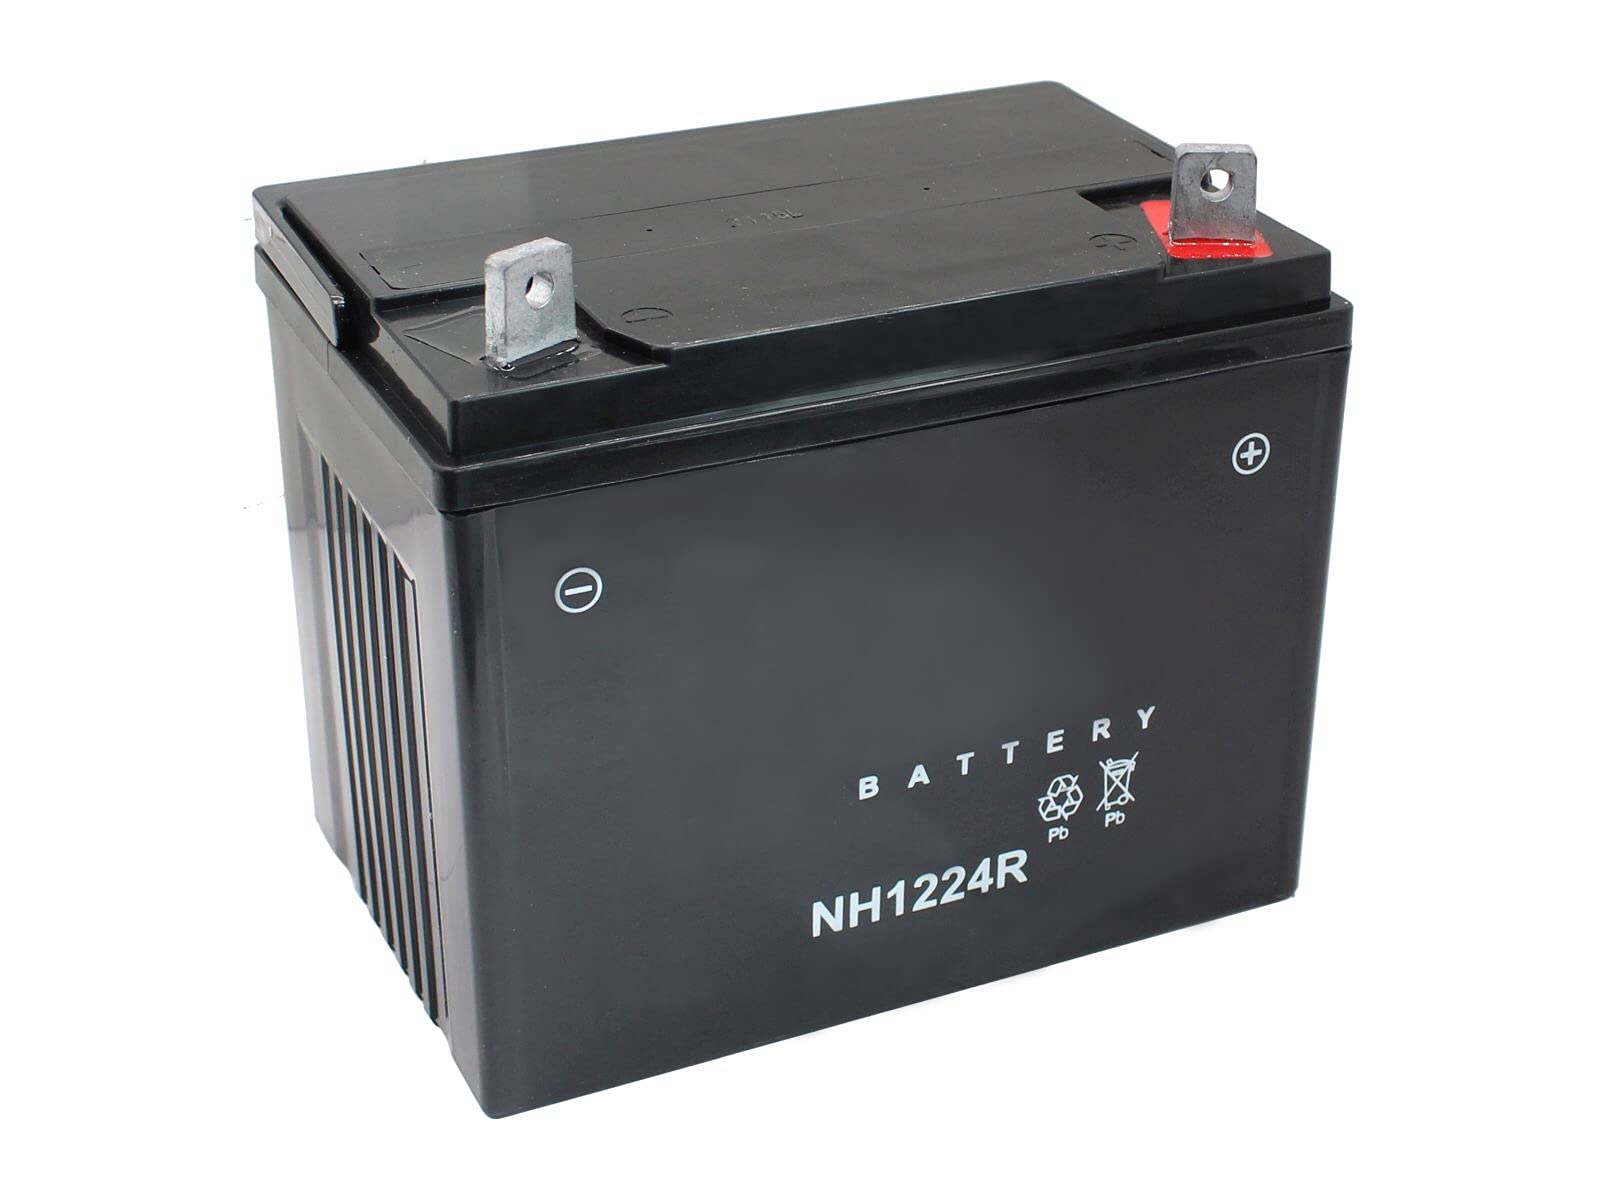 SECURA Batterie 12V 22Ah (+ Pol Rechts) kompatibel mit MTD RH 115/76 13C1452C600 Rasentraktor